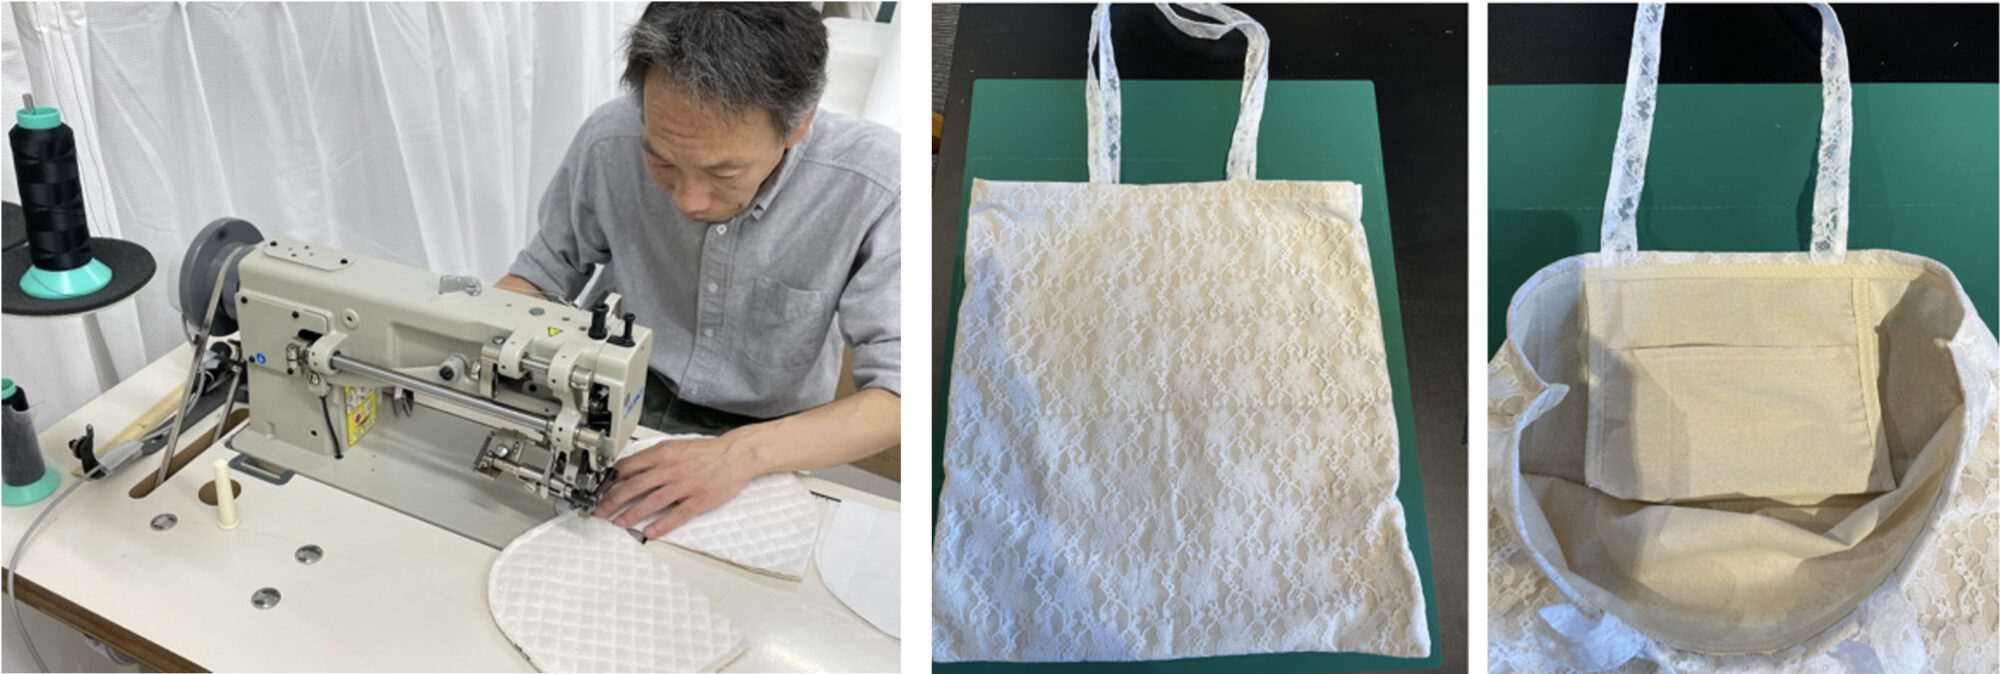 縫製サンプル品を制作している様子 / トートバッグでは内ポケットの仕様をサンプルにて制作